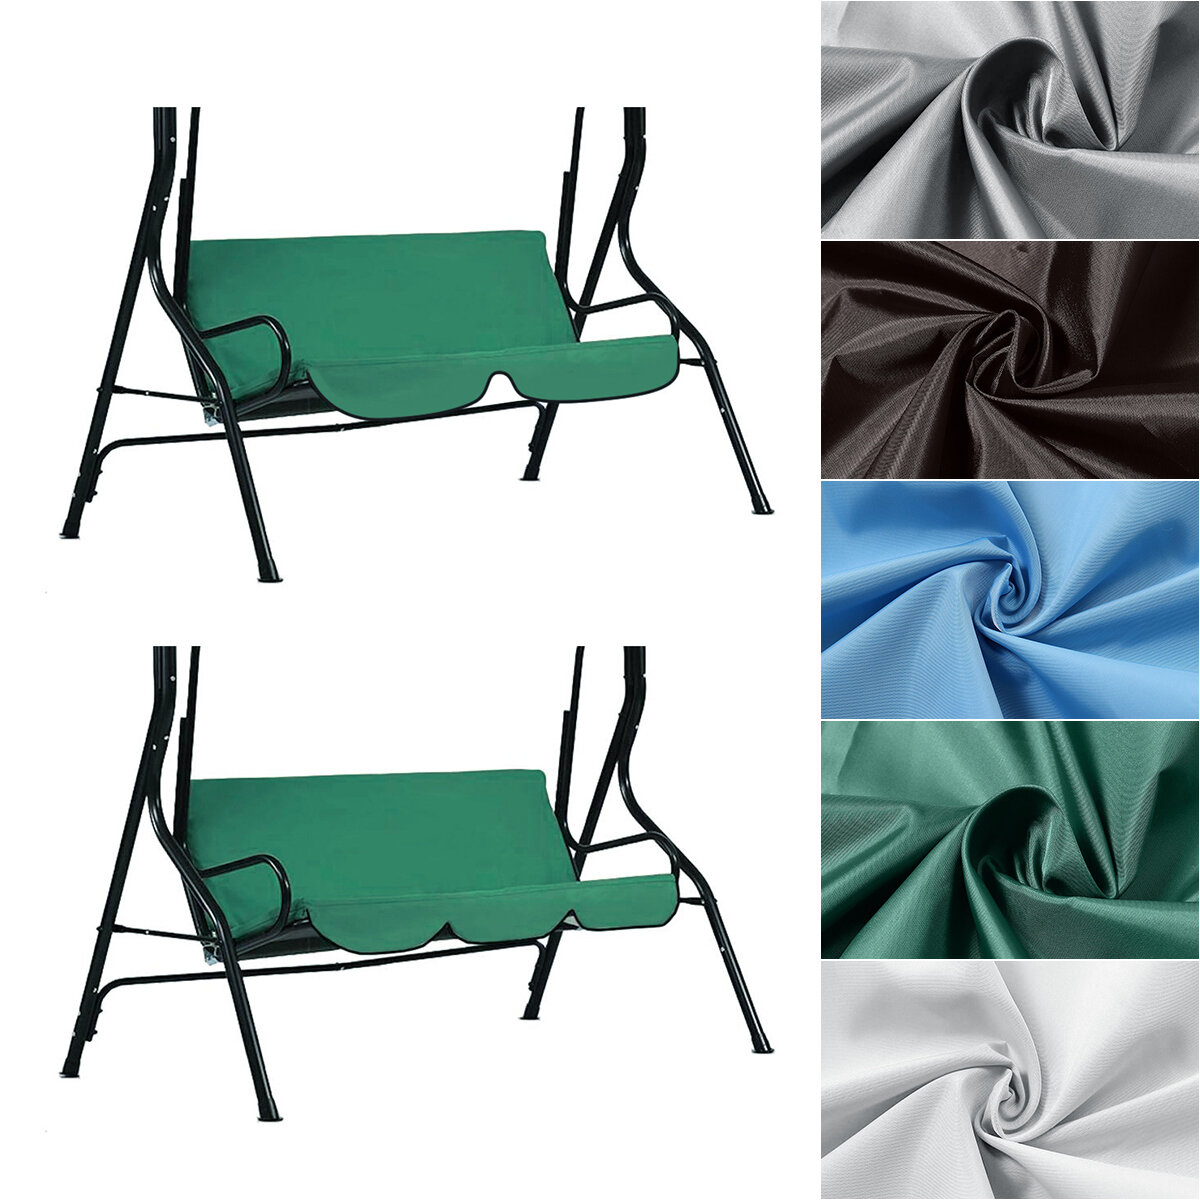 غطاء أرجوحة خارجية بمقعدين / ثلاثة مقاعد غطاء مقاوم للمطر بدون غطاء علوي للأنشطة